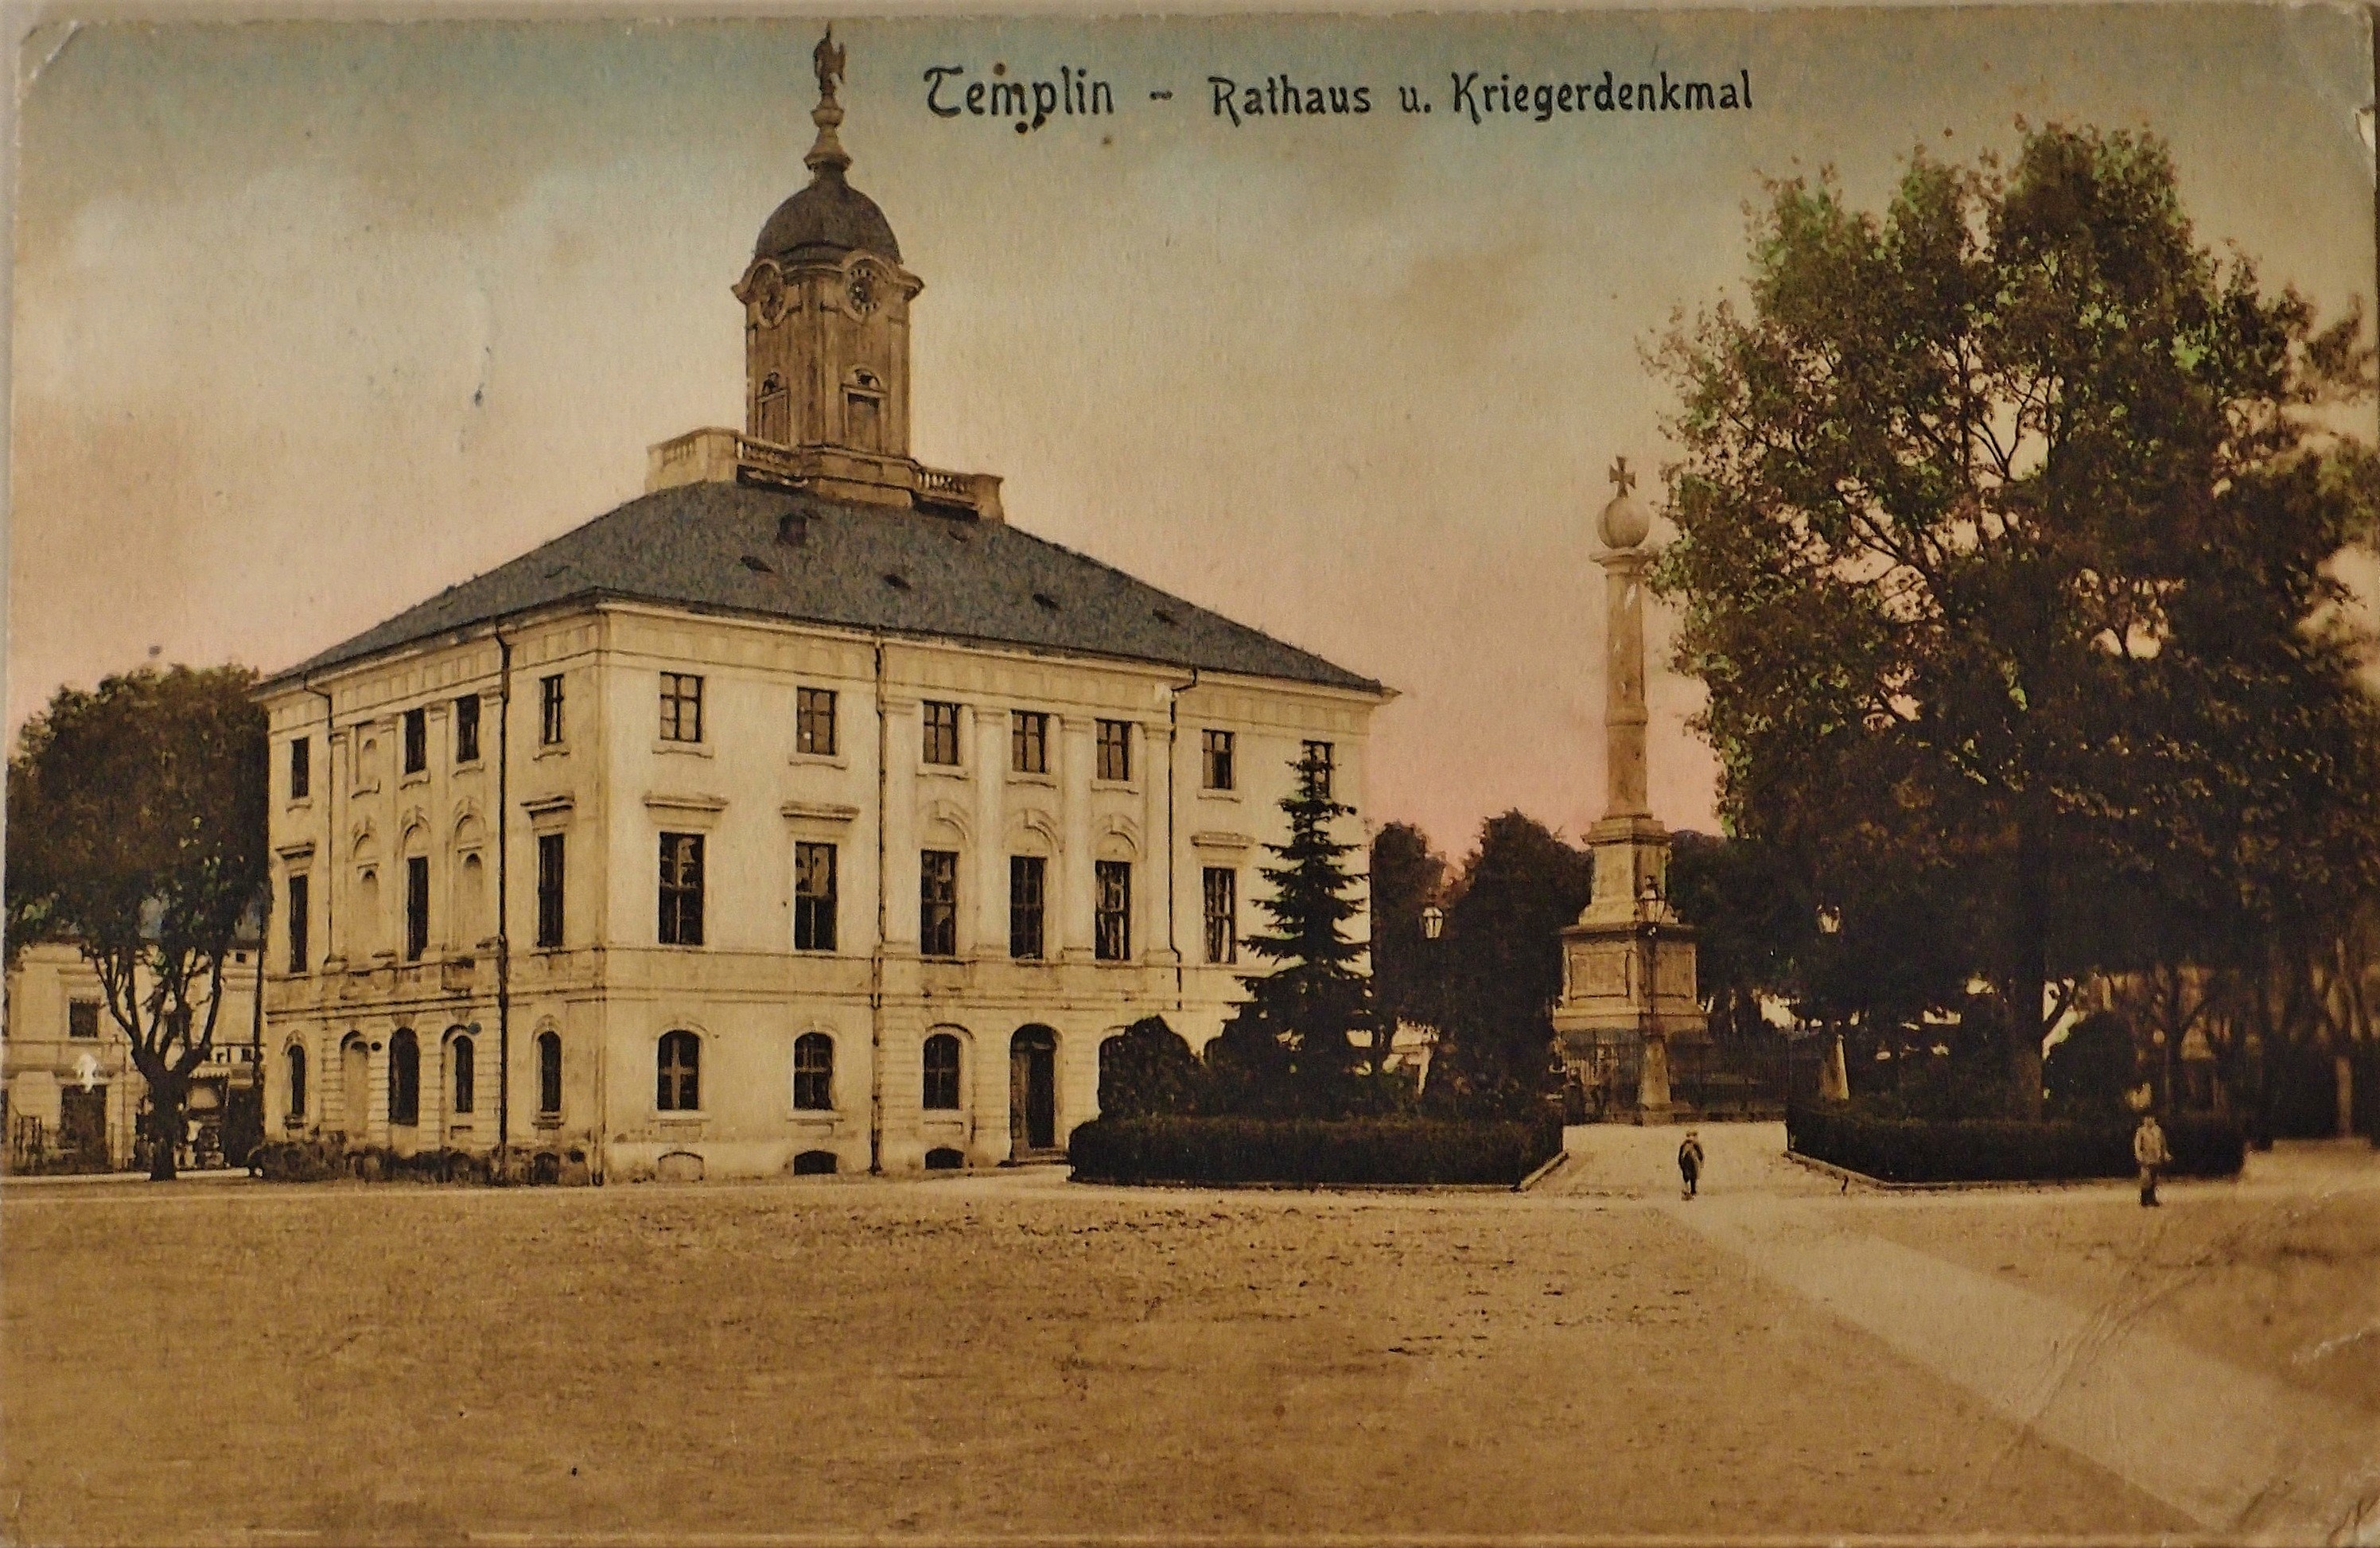 Ansichtskarte "Rathaus u. Kriegerdenkmal" in Templin (Museum für Stadtgeschichte Templin CC BY-NC-SA)